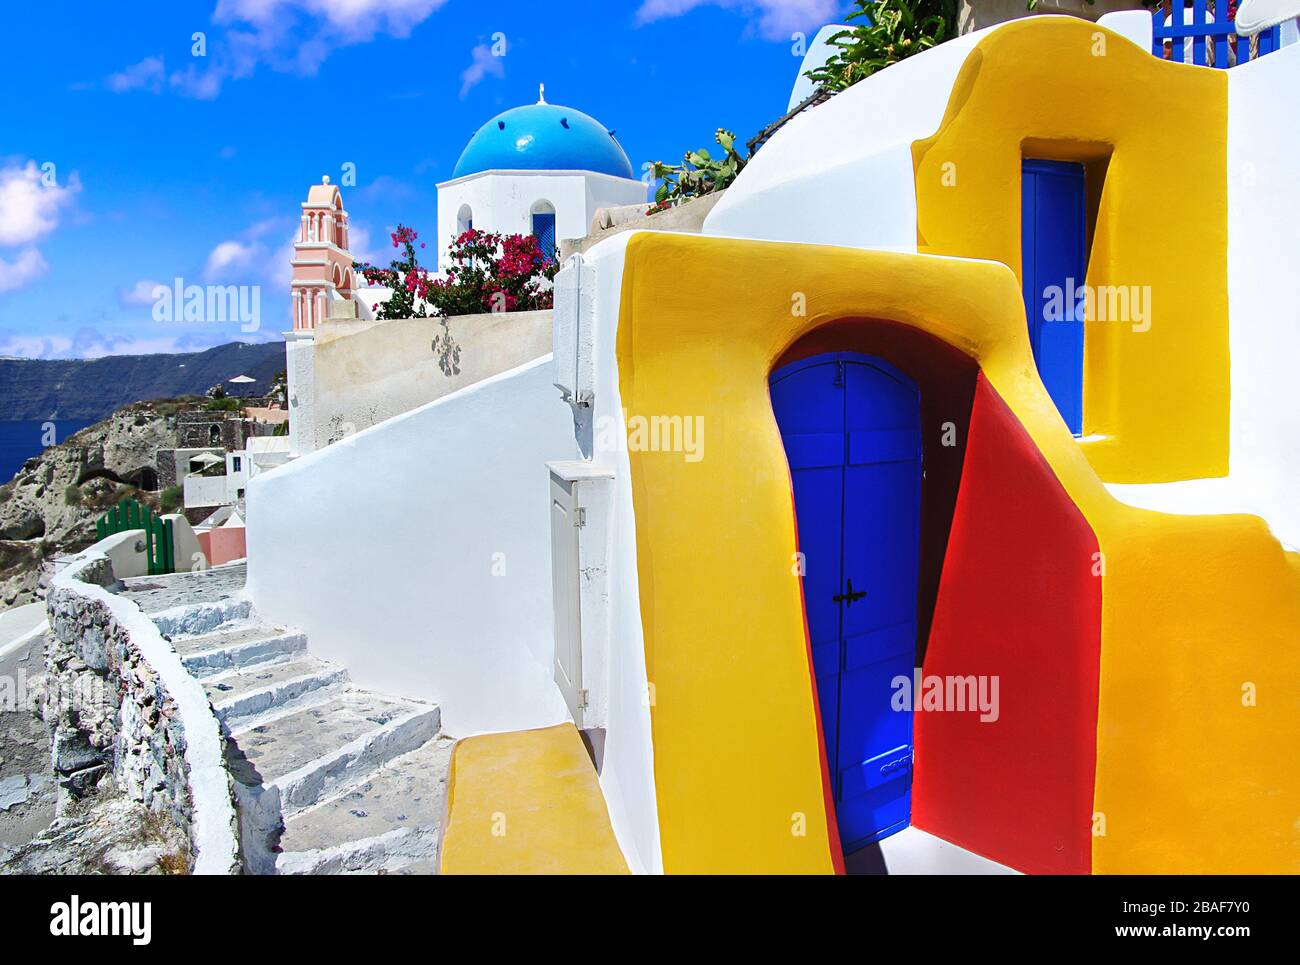 Unica isola colorata Santorini, vista con case colorate e caldera, Grecia. Foto Stock